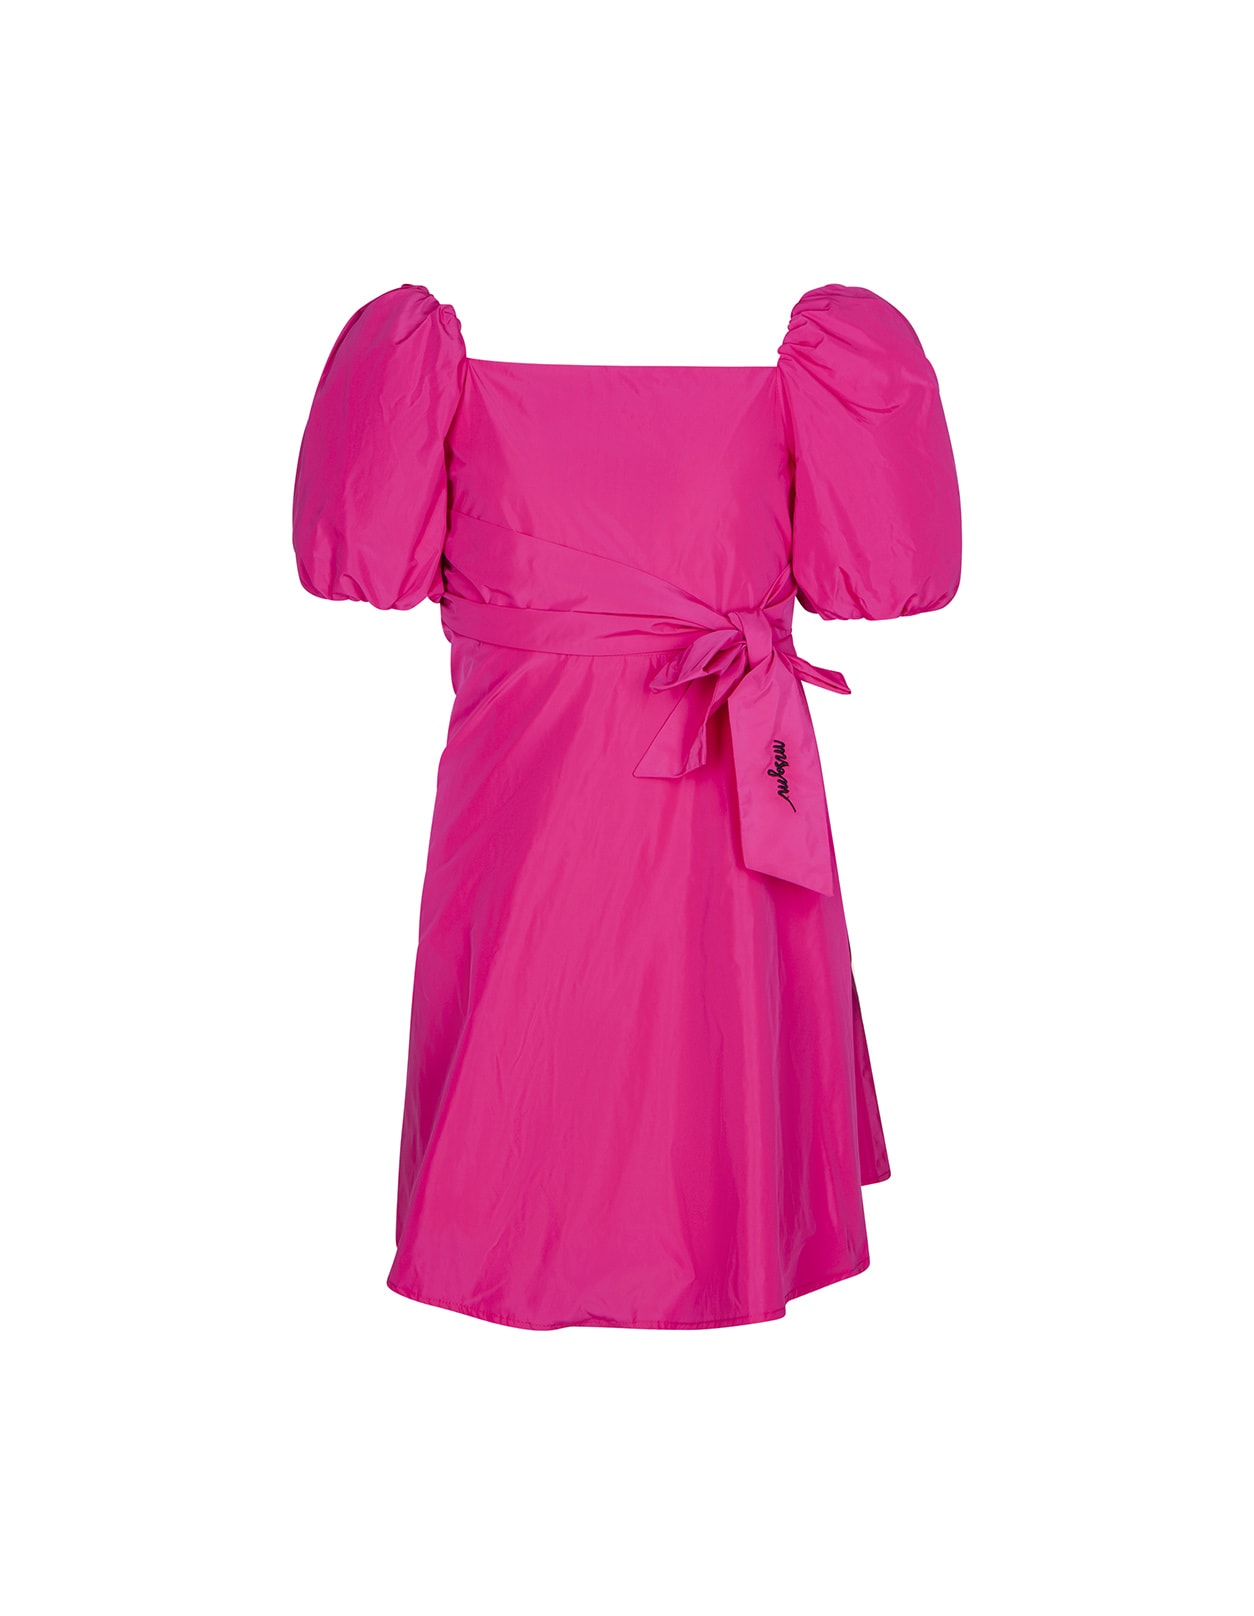 Msgm Kids' Fuchsia Poplin Dress With Bowknot In Pink